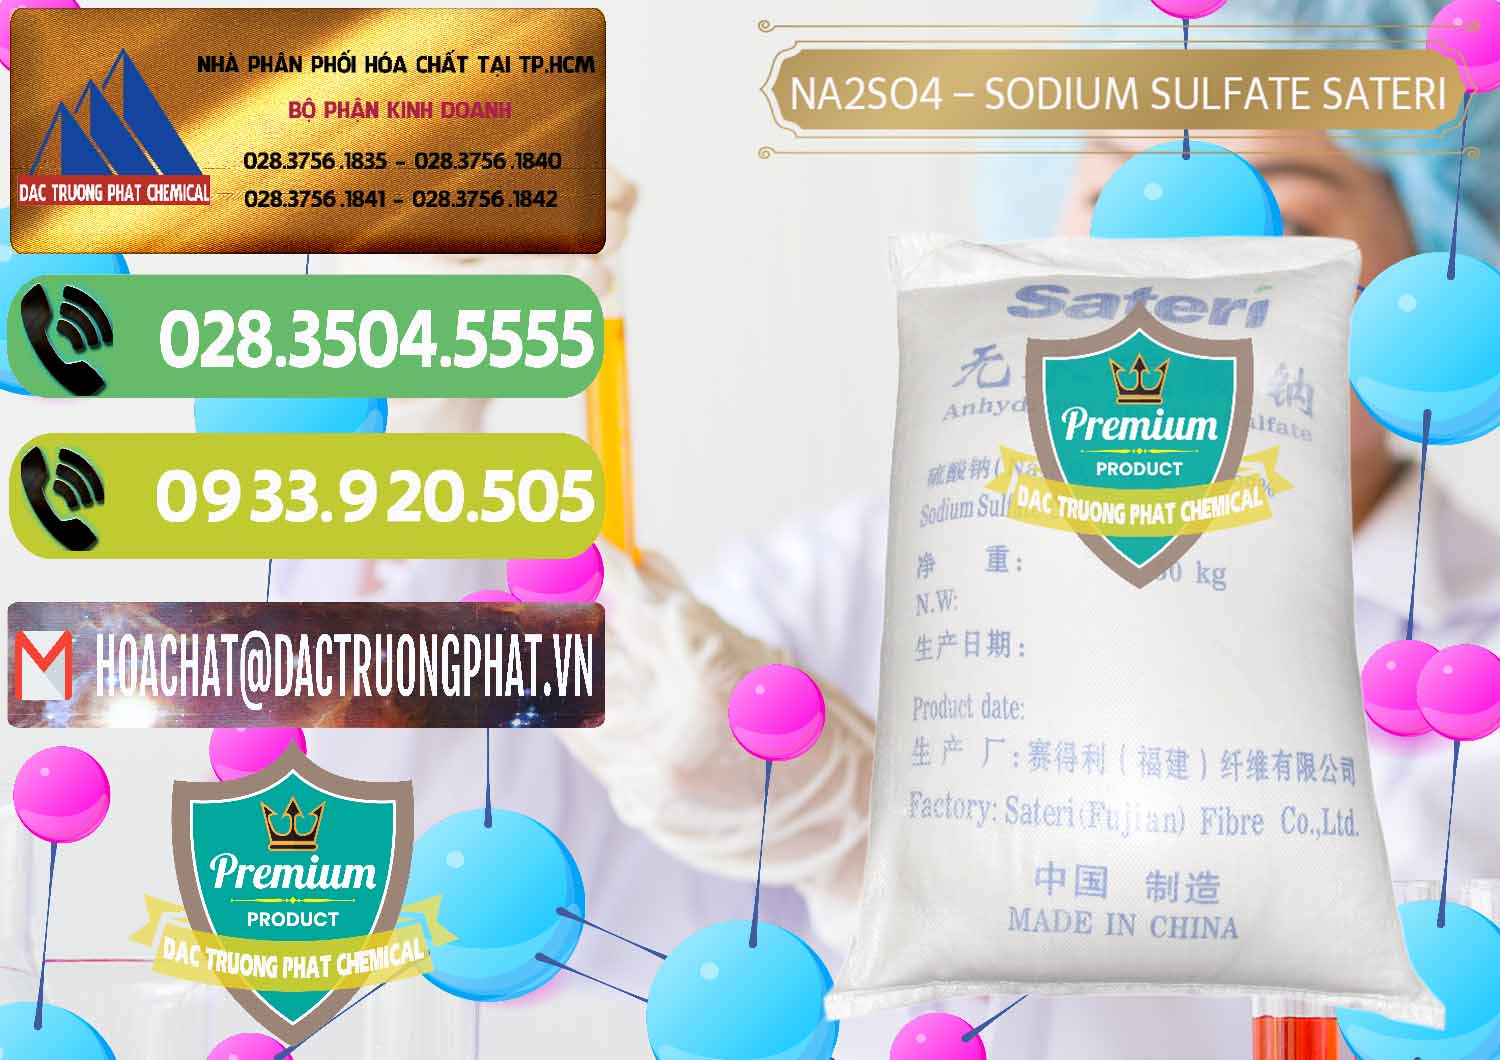 Cty bán & phân phối Sodium Sulphate - Muối Sunfat Na2SO4 Sateri Trung Quốc China - 0100 - Nơi nhập khẩu ( cung cấp ) hóa chất tại TP.HCM - hoachatmientay.vn